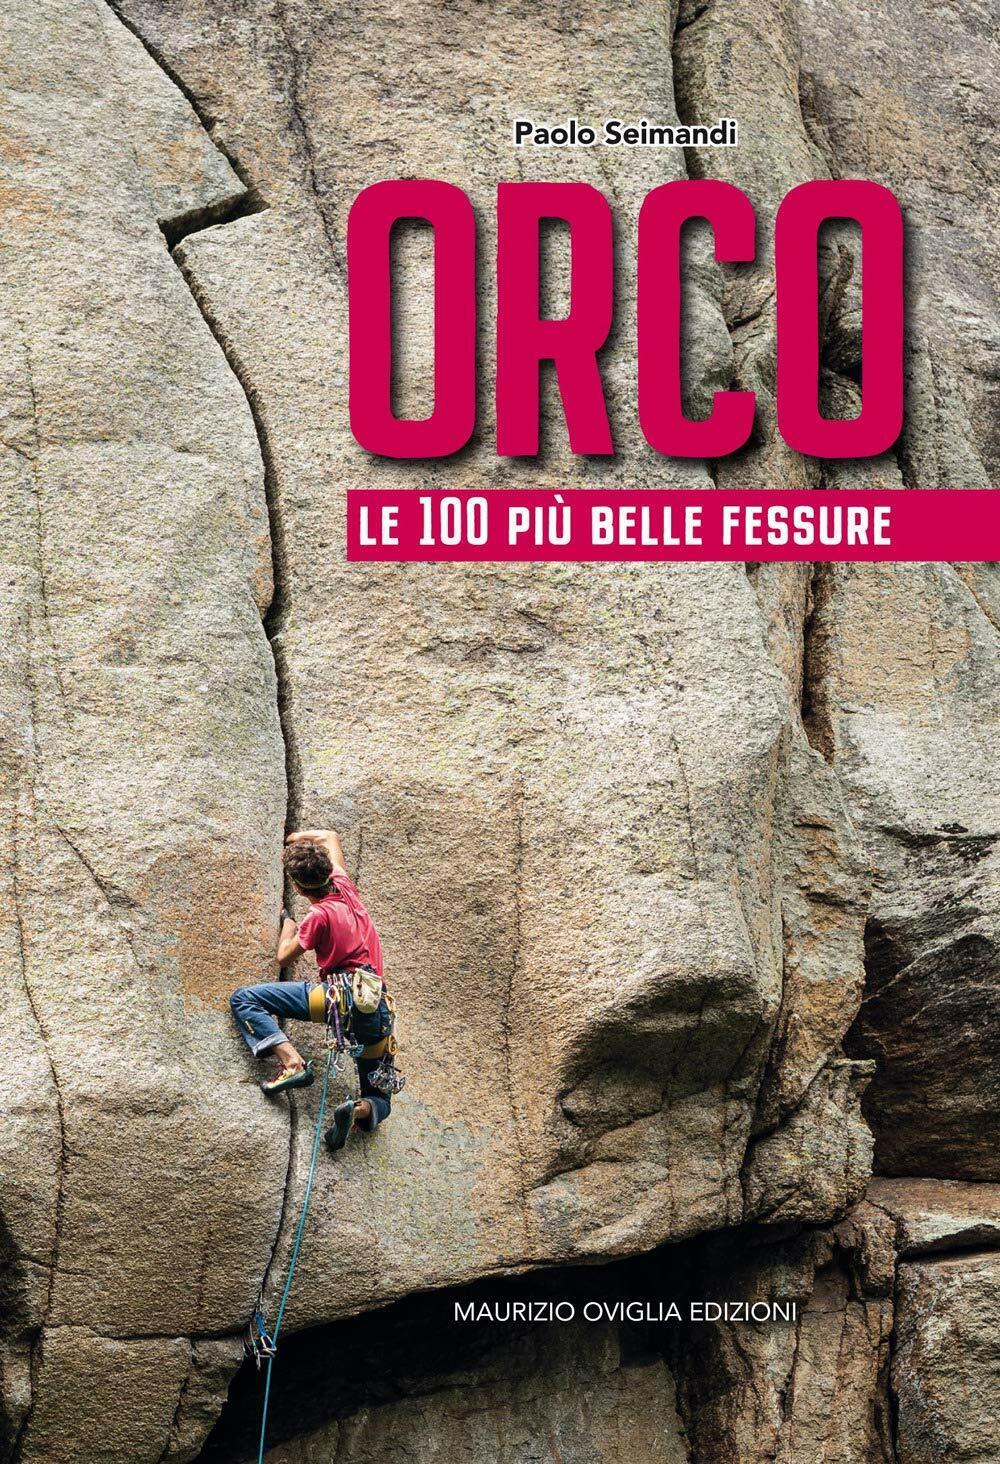 Orco. Le 100 pi? belle fessure - Paolo Seimandi - Maurizio Oviglia Edizioni,2020